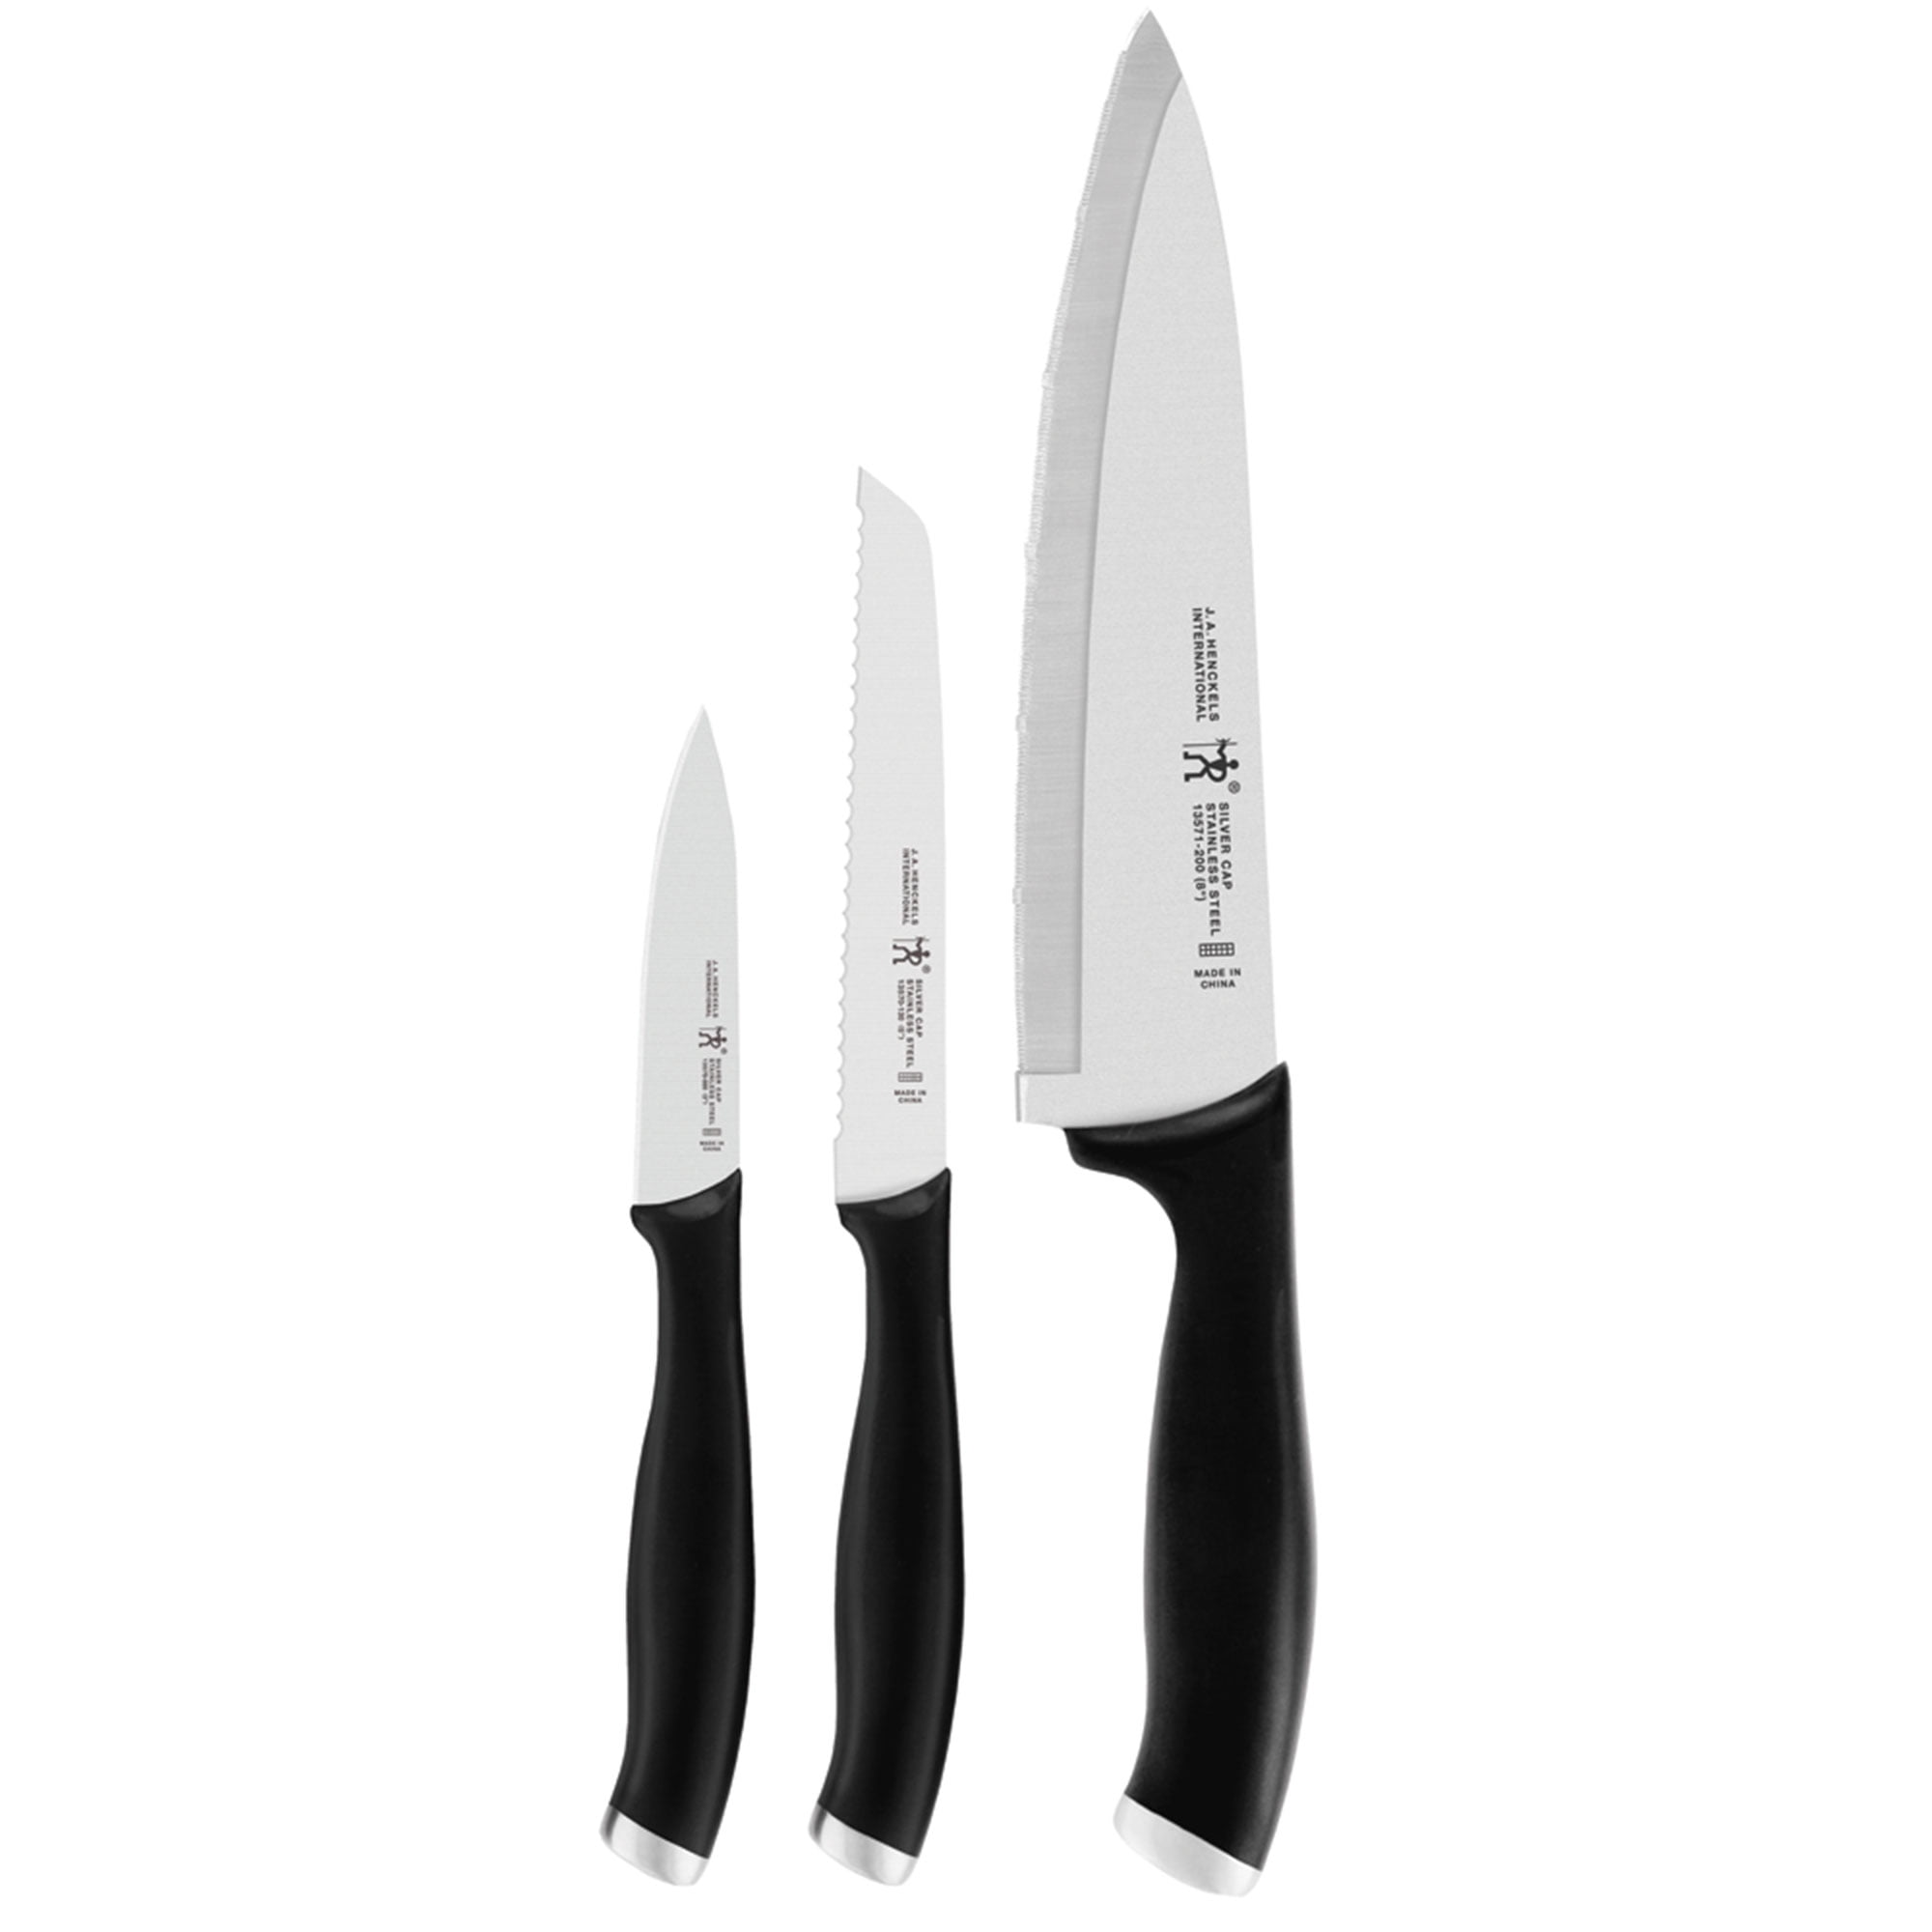 J.A. Henckels International Silvercap 3-pc Starter Knife Set - Walmart.com